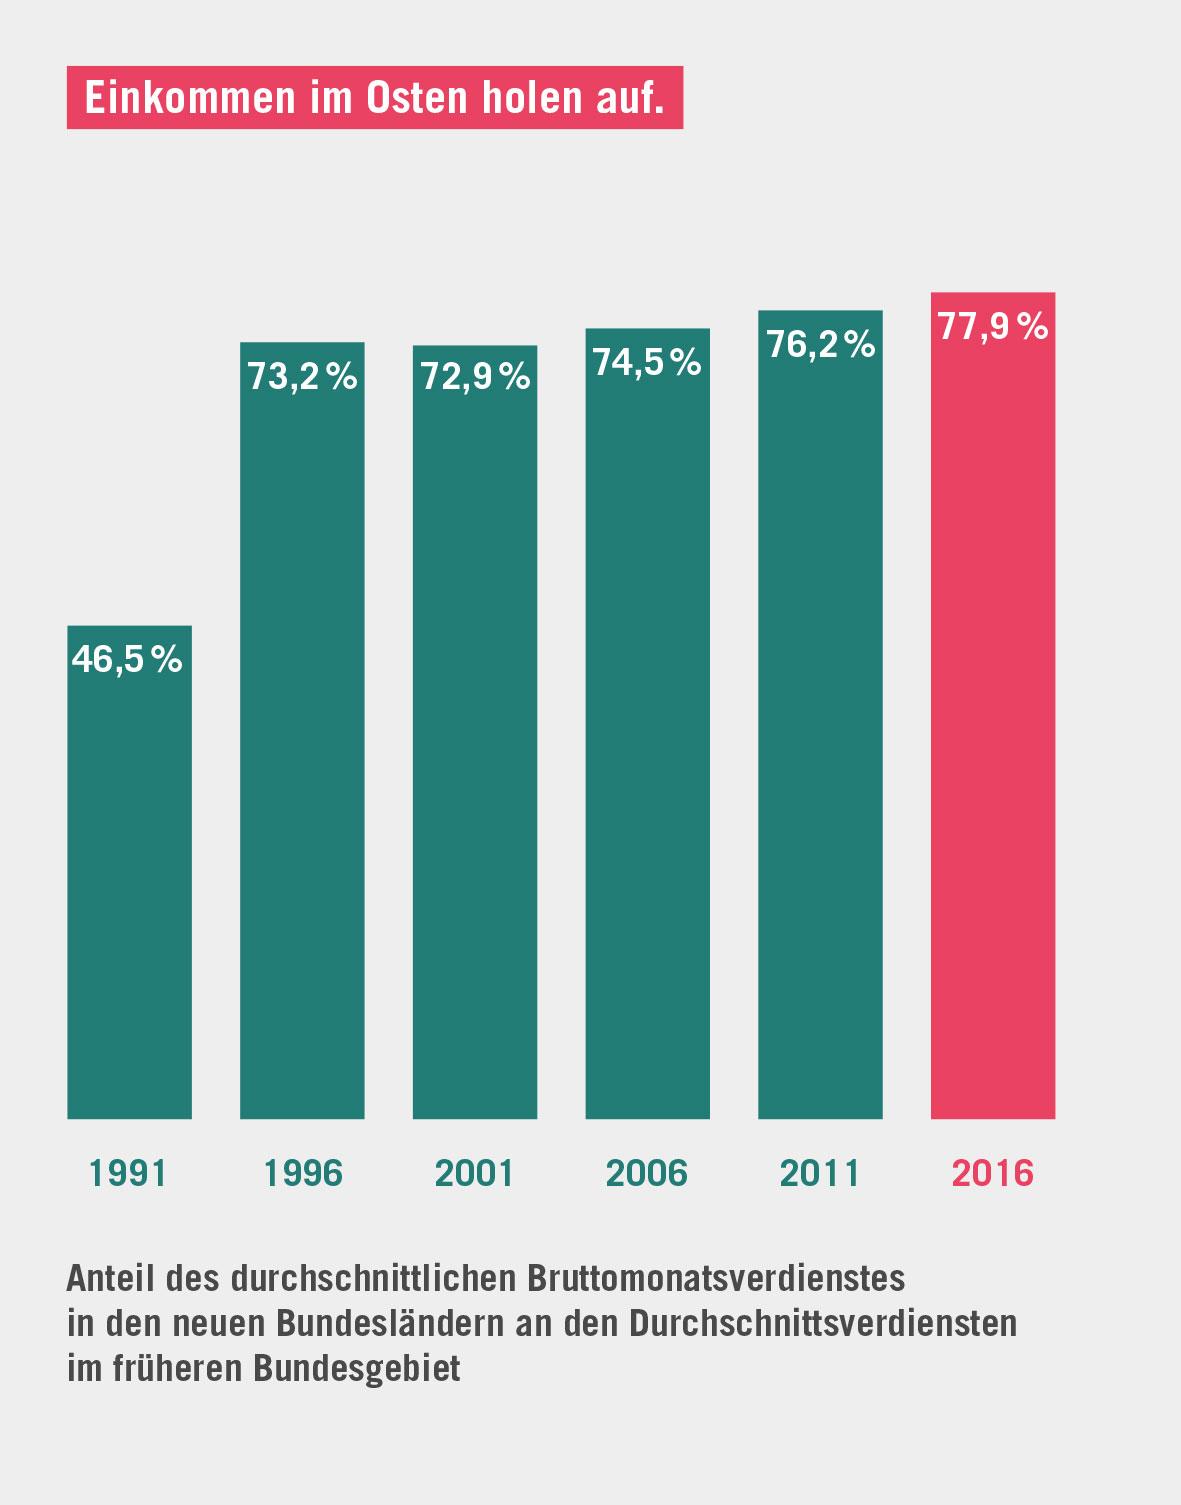 11 Fakten zur Ungleichheit in Deutschland - Einkommensunterschiede